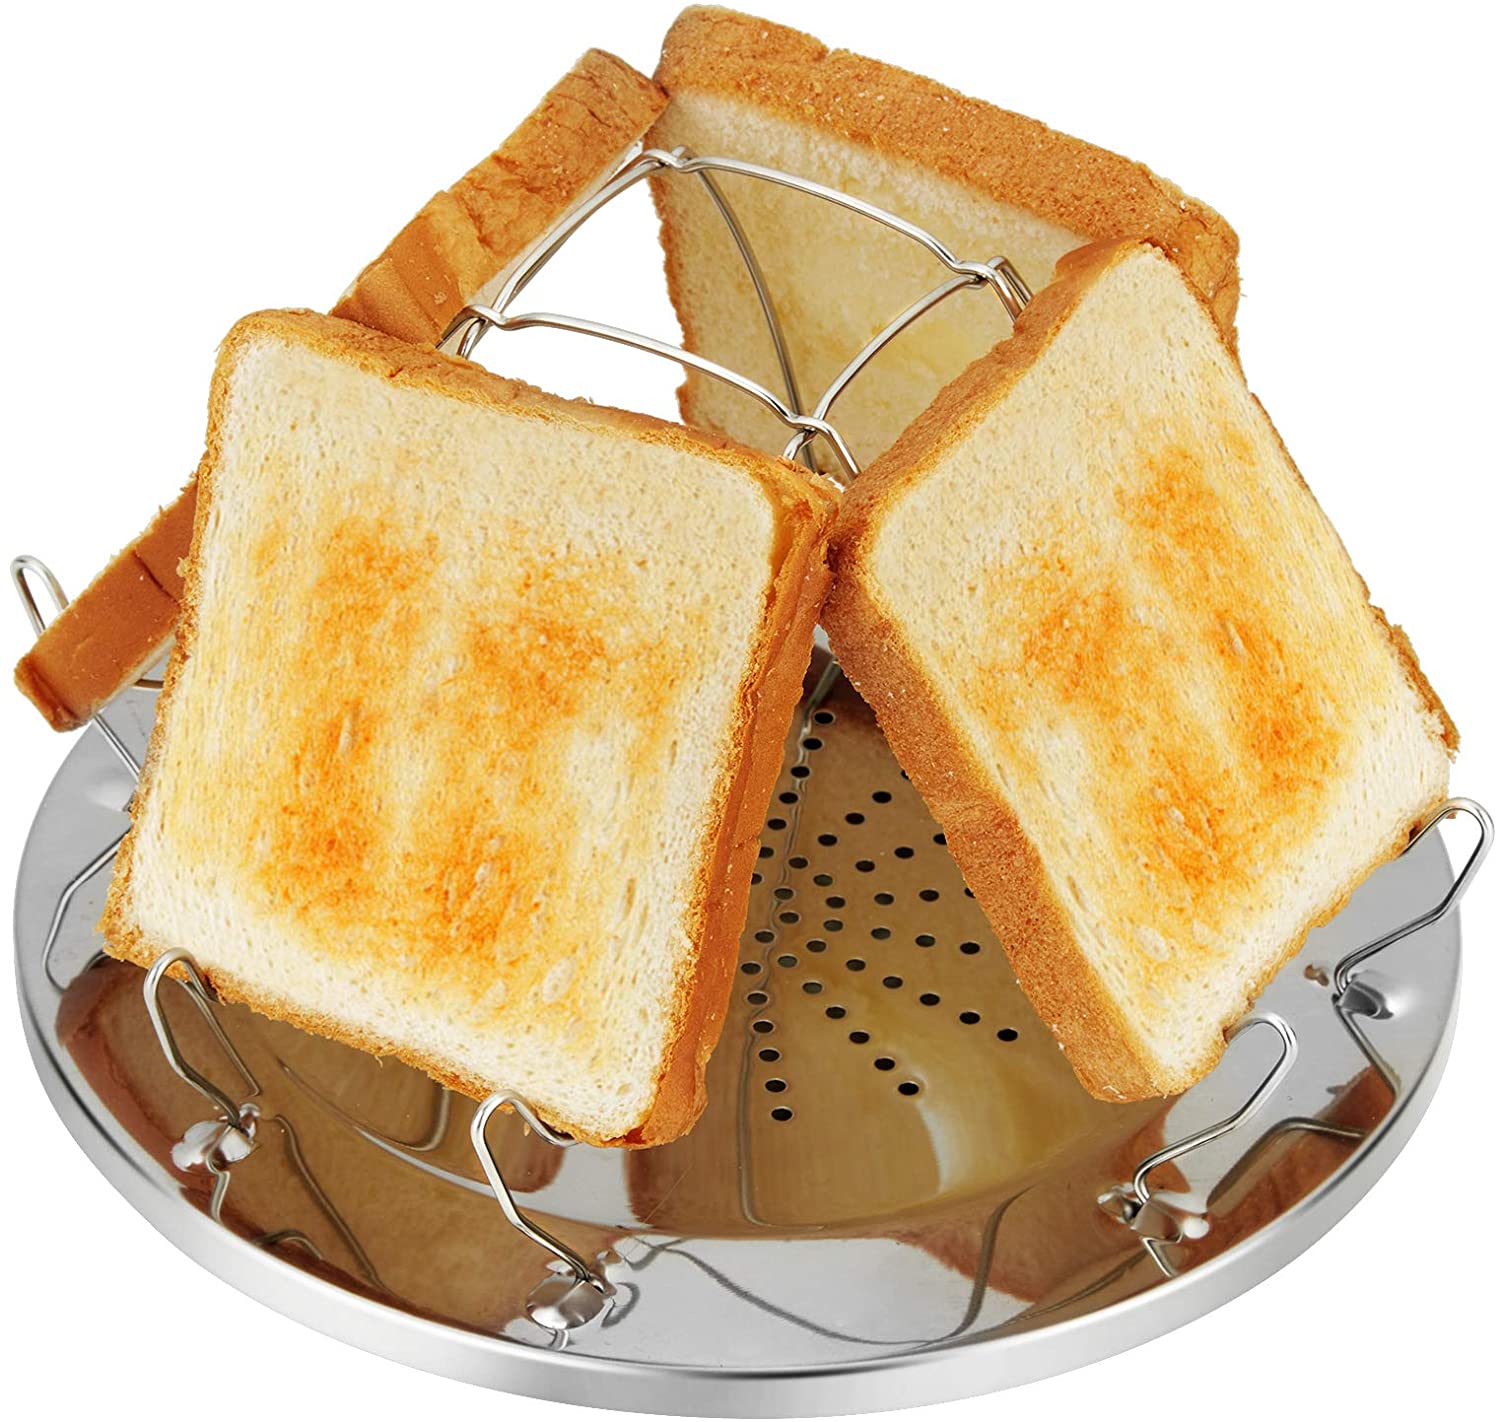 Toast Halter Gaskocher Outdoor Camping Toaster Brötchen Aufbacken Toastaufsatz 